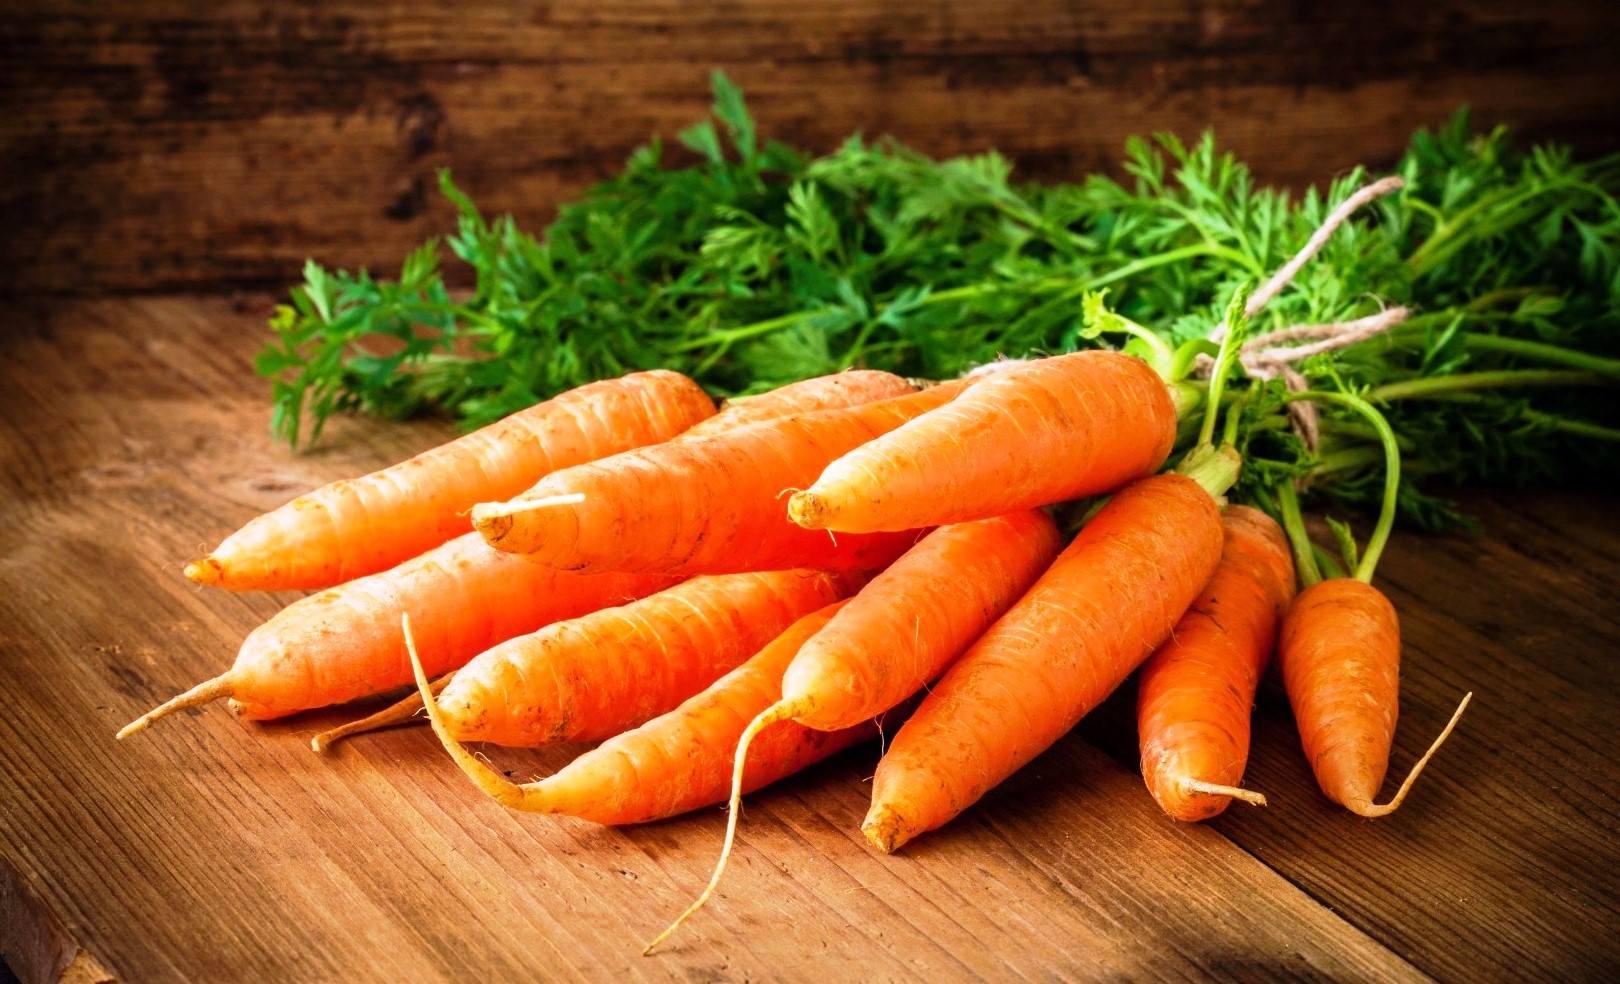 Вставьте шинковочный круг и установите насадку-терку. Пропустите очищенную свежую морковь через терку. Это займет не более минуты. Выложите морковь к арахису. Помешивая, прогрейте пару минут, до изменения яркости морковь и хорошего смешивания.